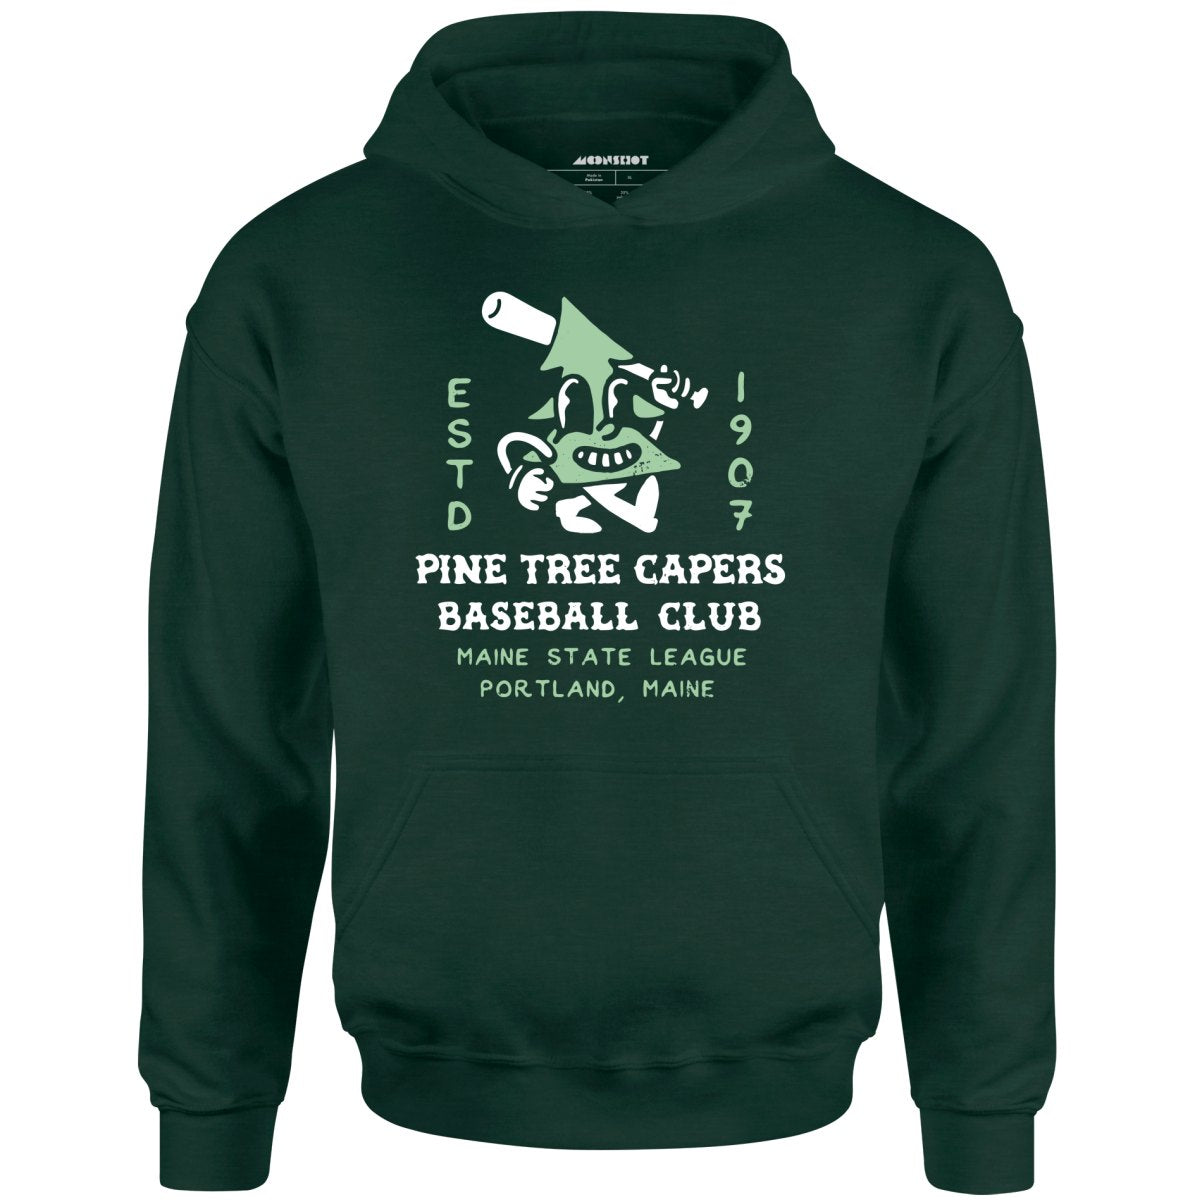 Pine Tree Capers - Portland, ME - Vintage Defunct Baseball Teams - Unisex Hoodie